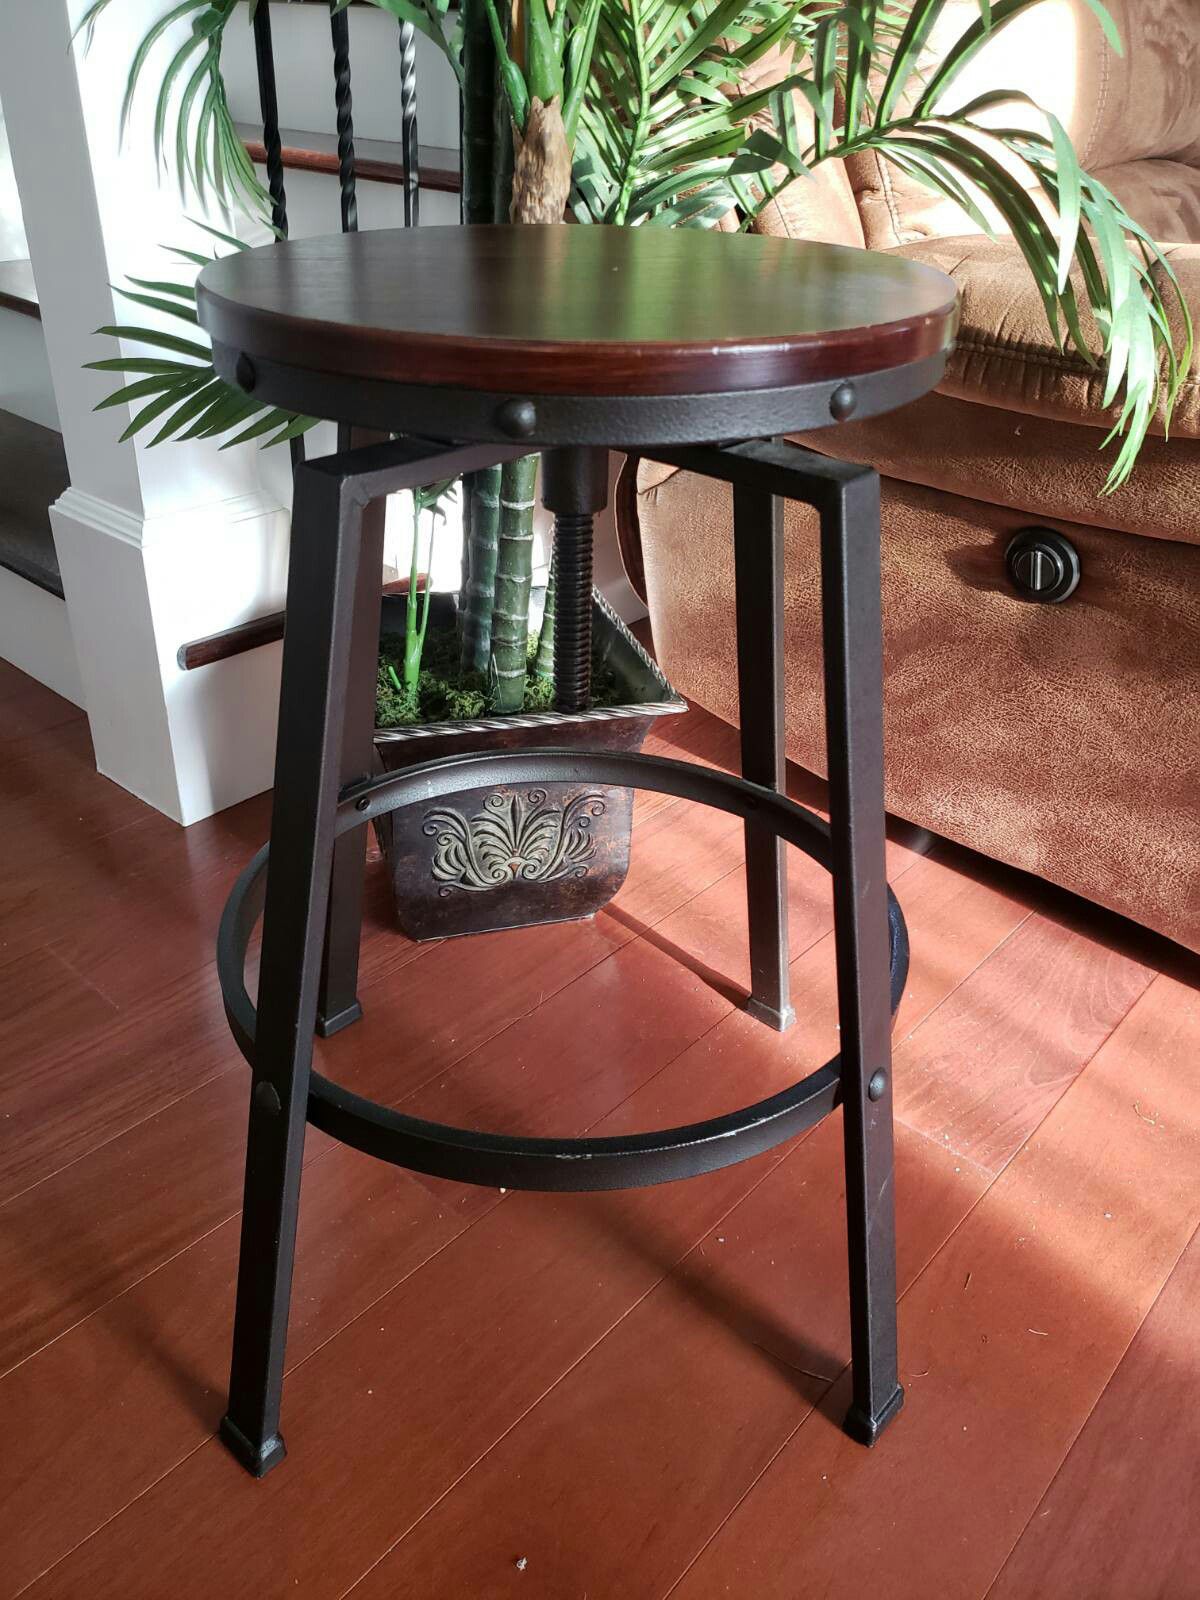 Adjustable height sturdy stool